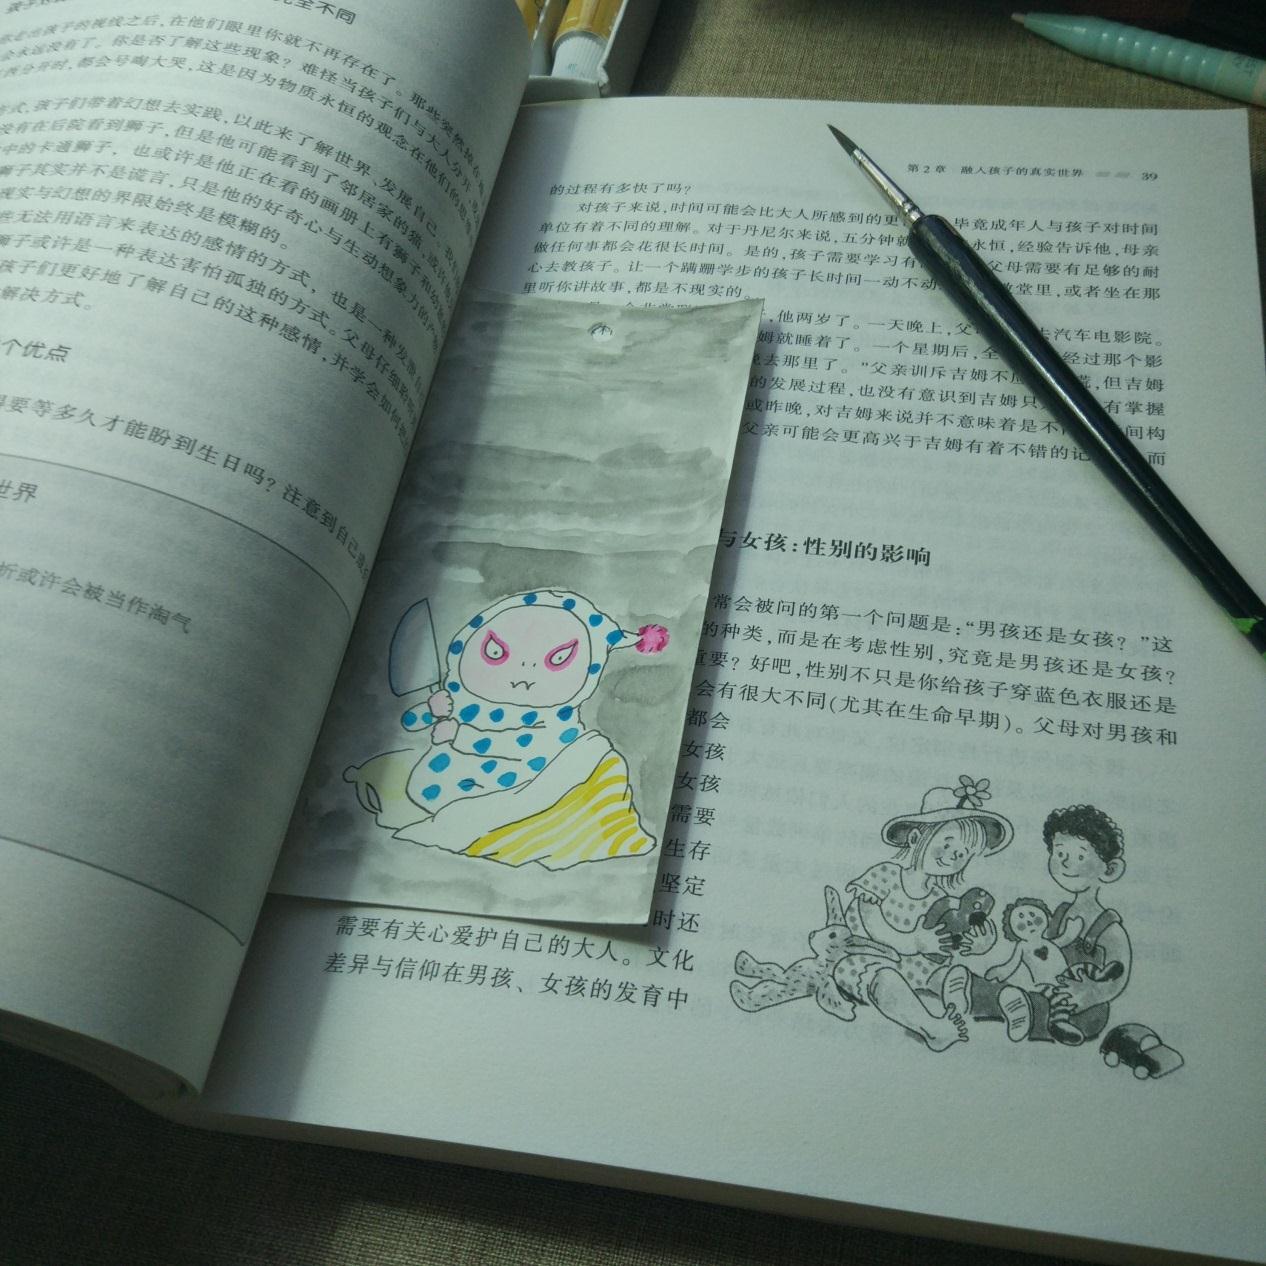 宋宋原创DIY水彩画 手绘书签制作教程